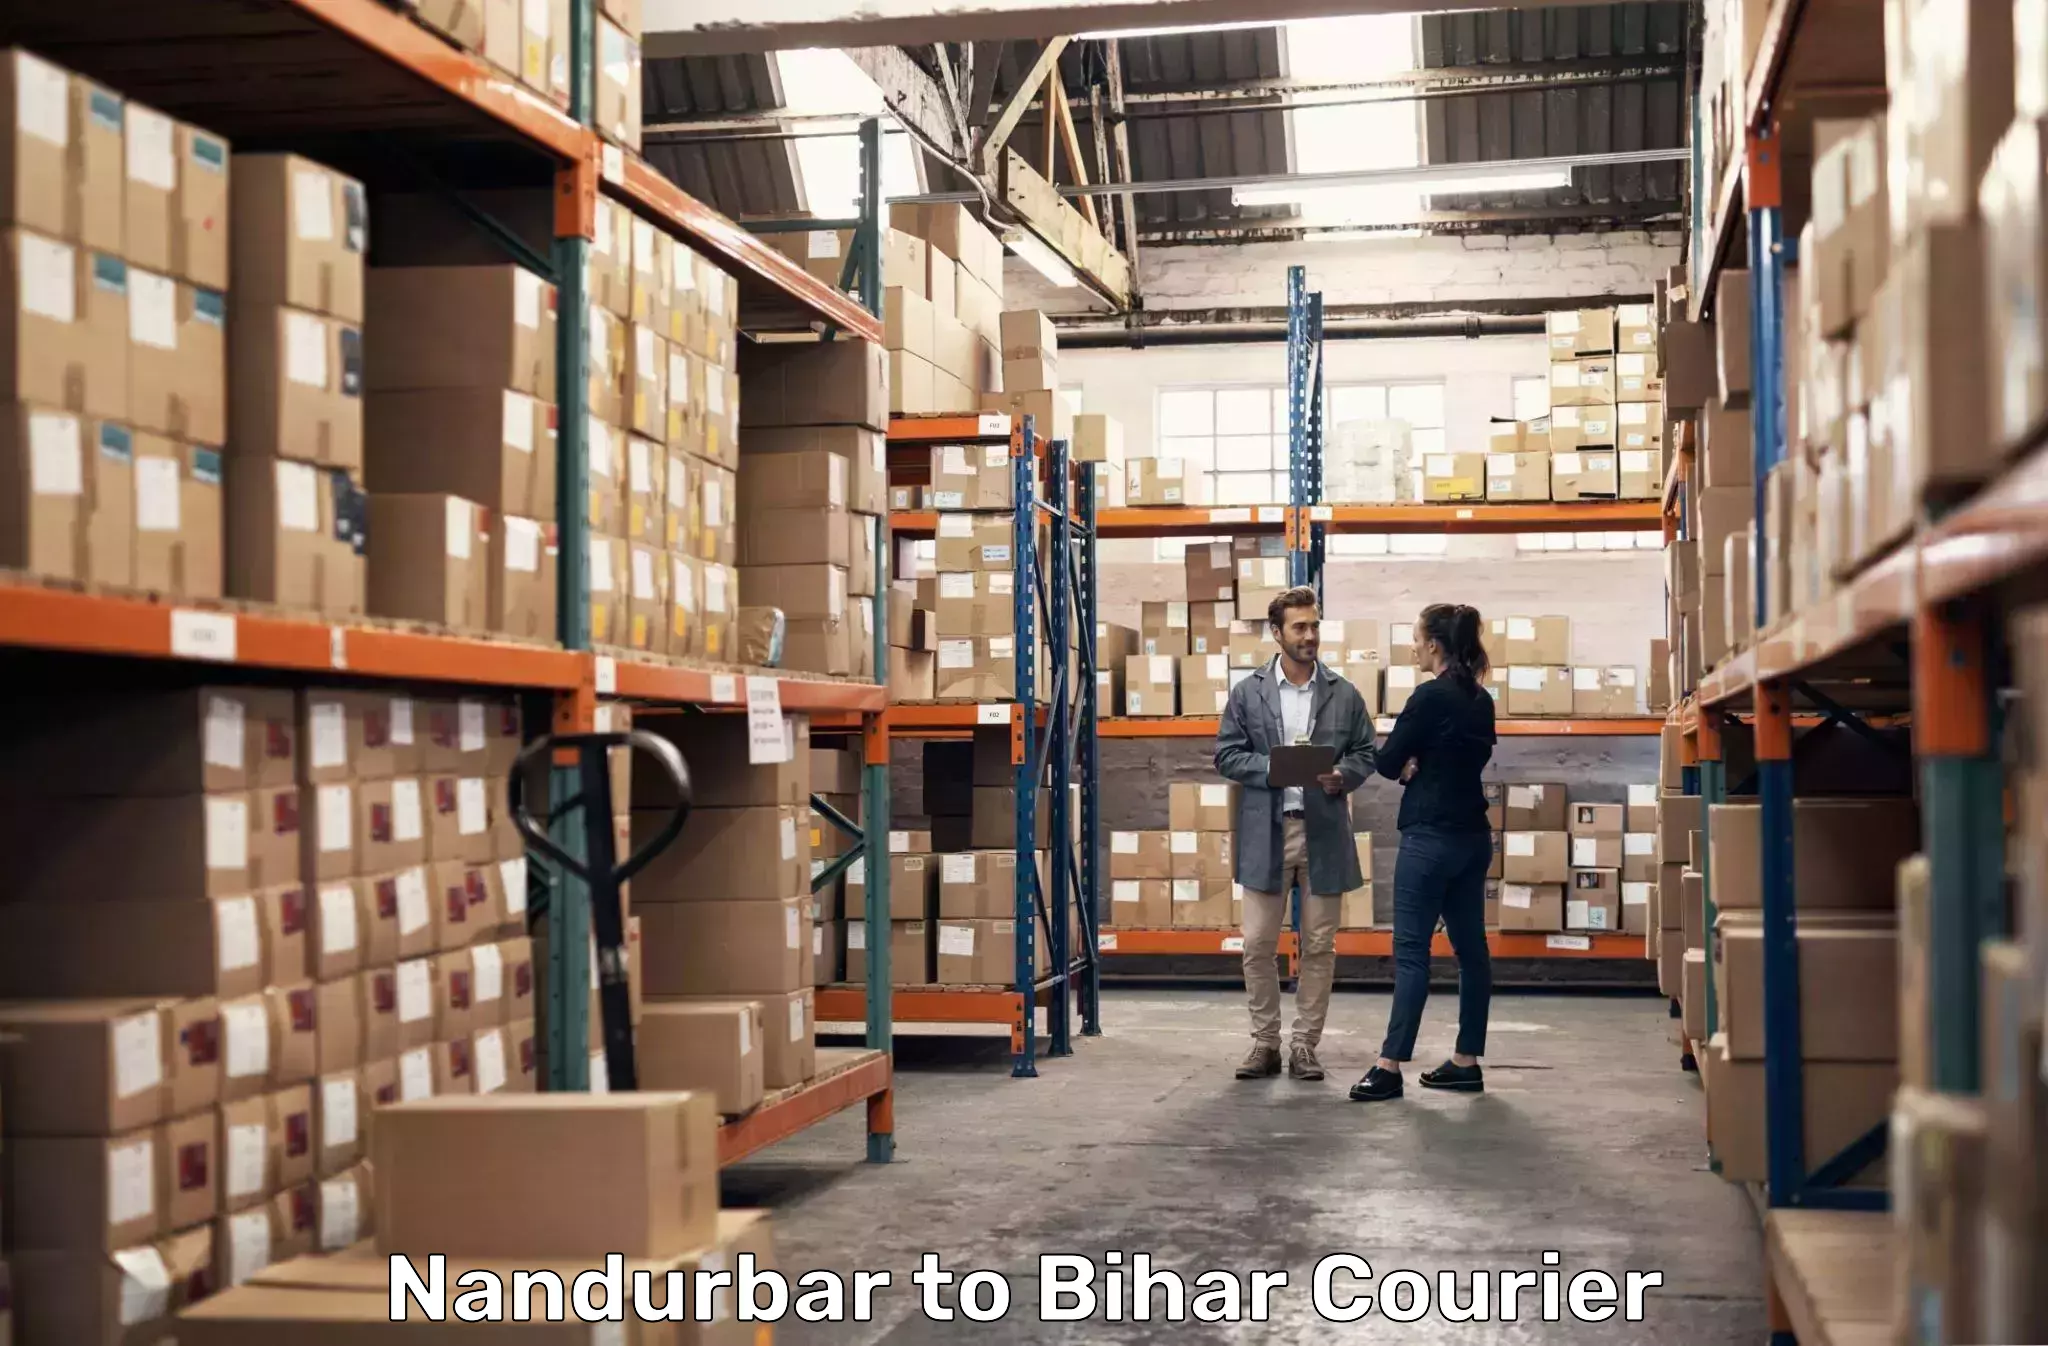 Premium courier solutions Nandurbar to Manjhaul